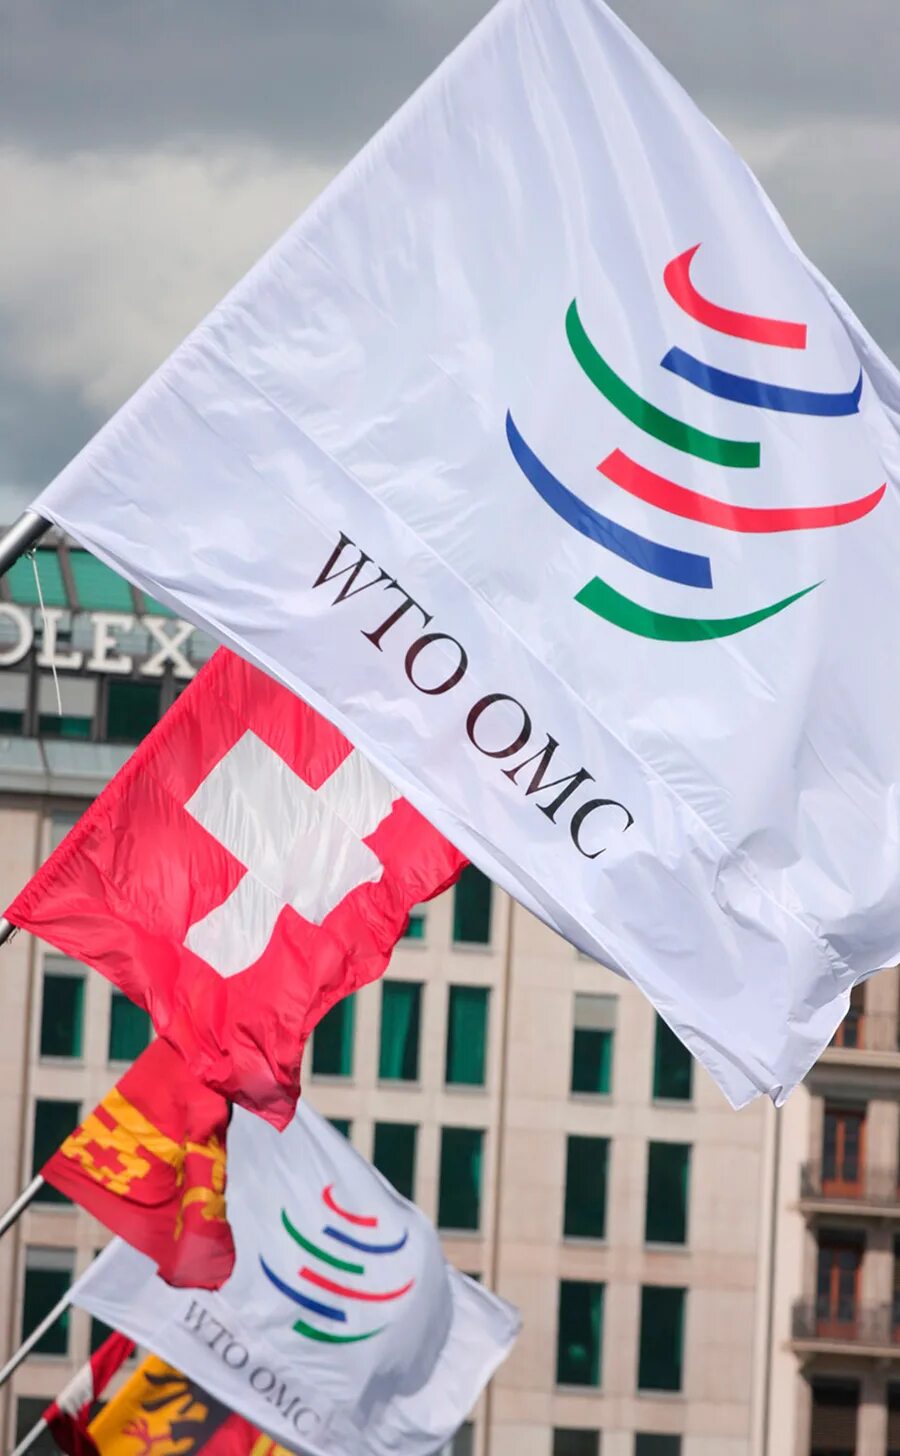 Вто оон. ВТО. Всемирная торговая организация. ВТО организация. ВТО флаг.